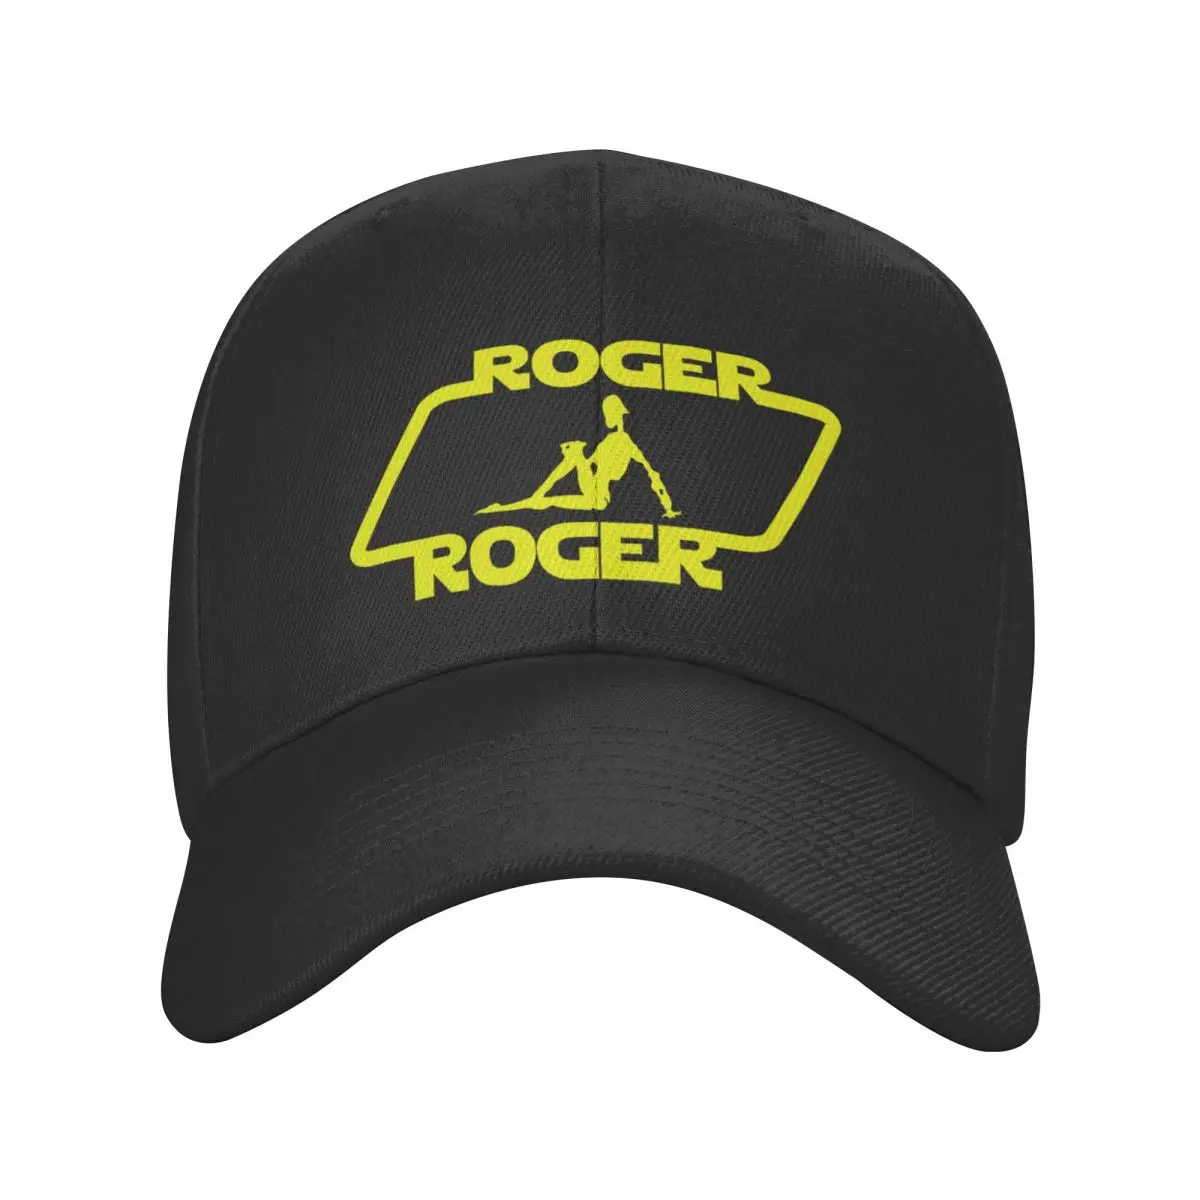 Соблазненная Роджером Модная бейсбольная кепка Roger, кепка с козырьком, мужская кепка, женская кепка, черная кепка, кепка для женщин Изображение 1